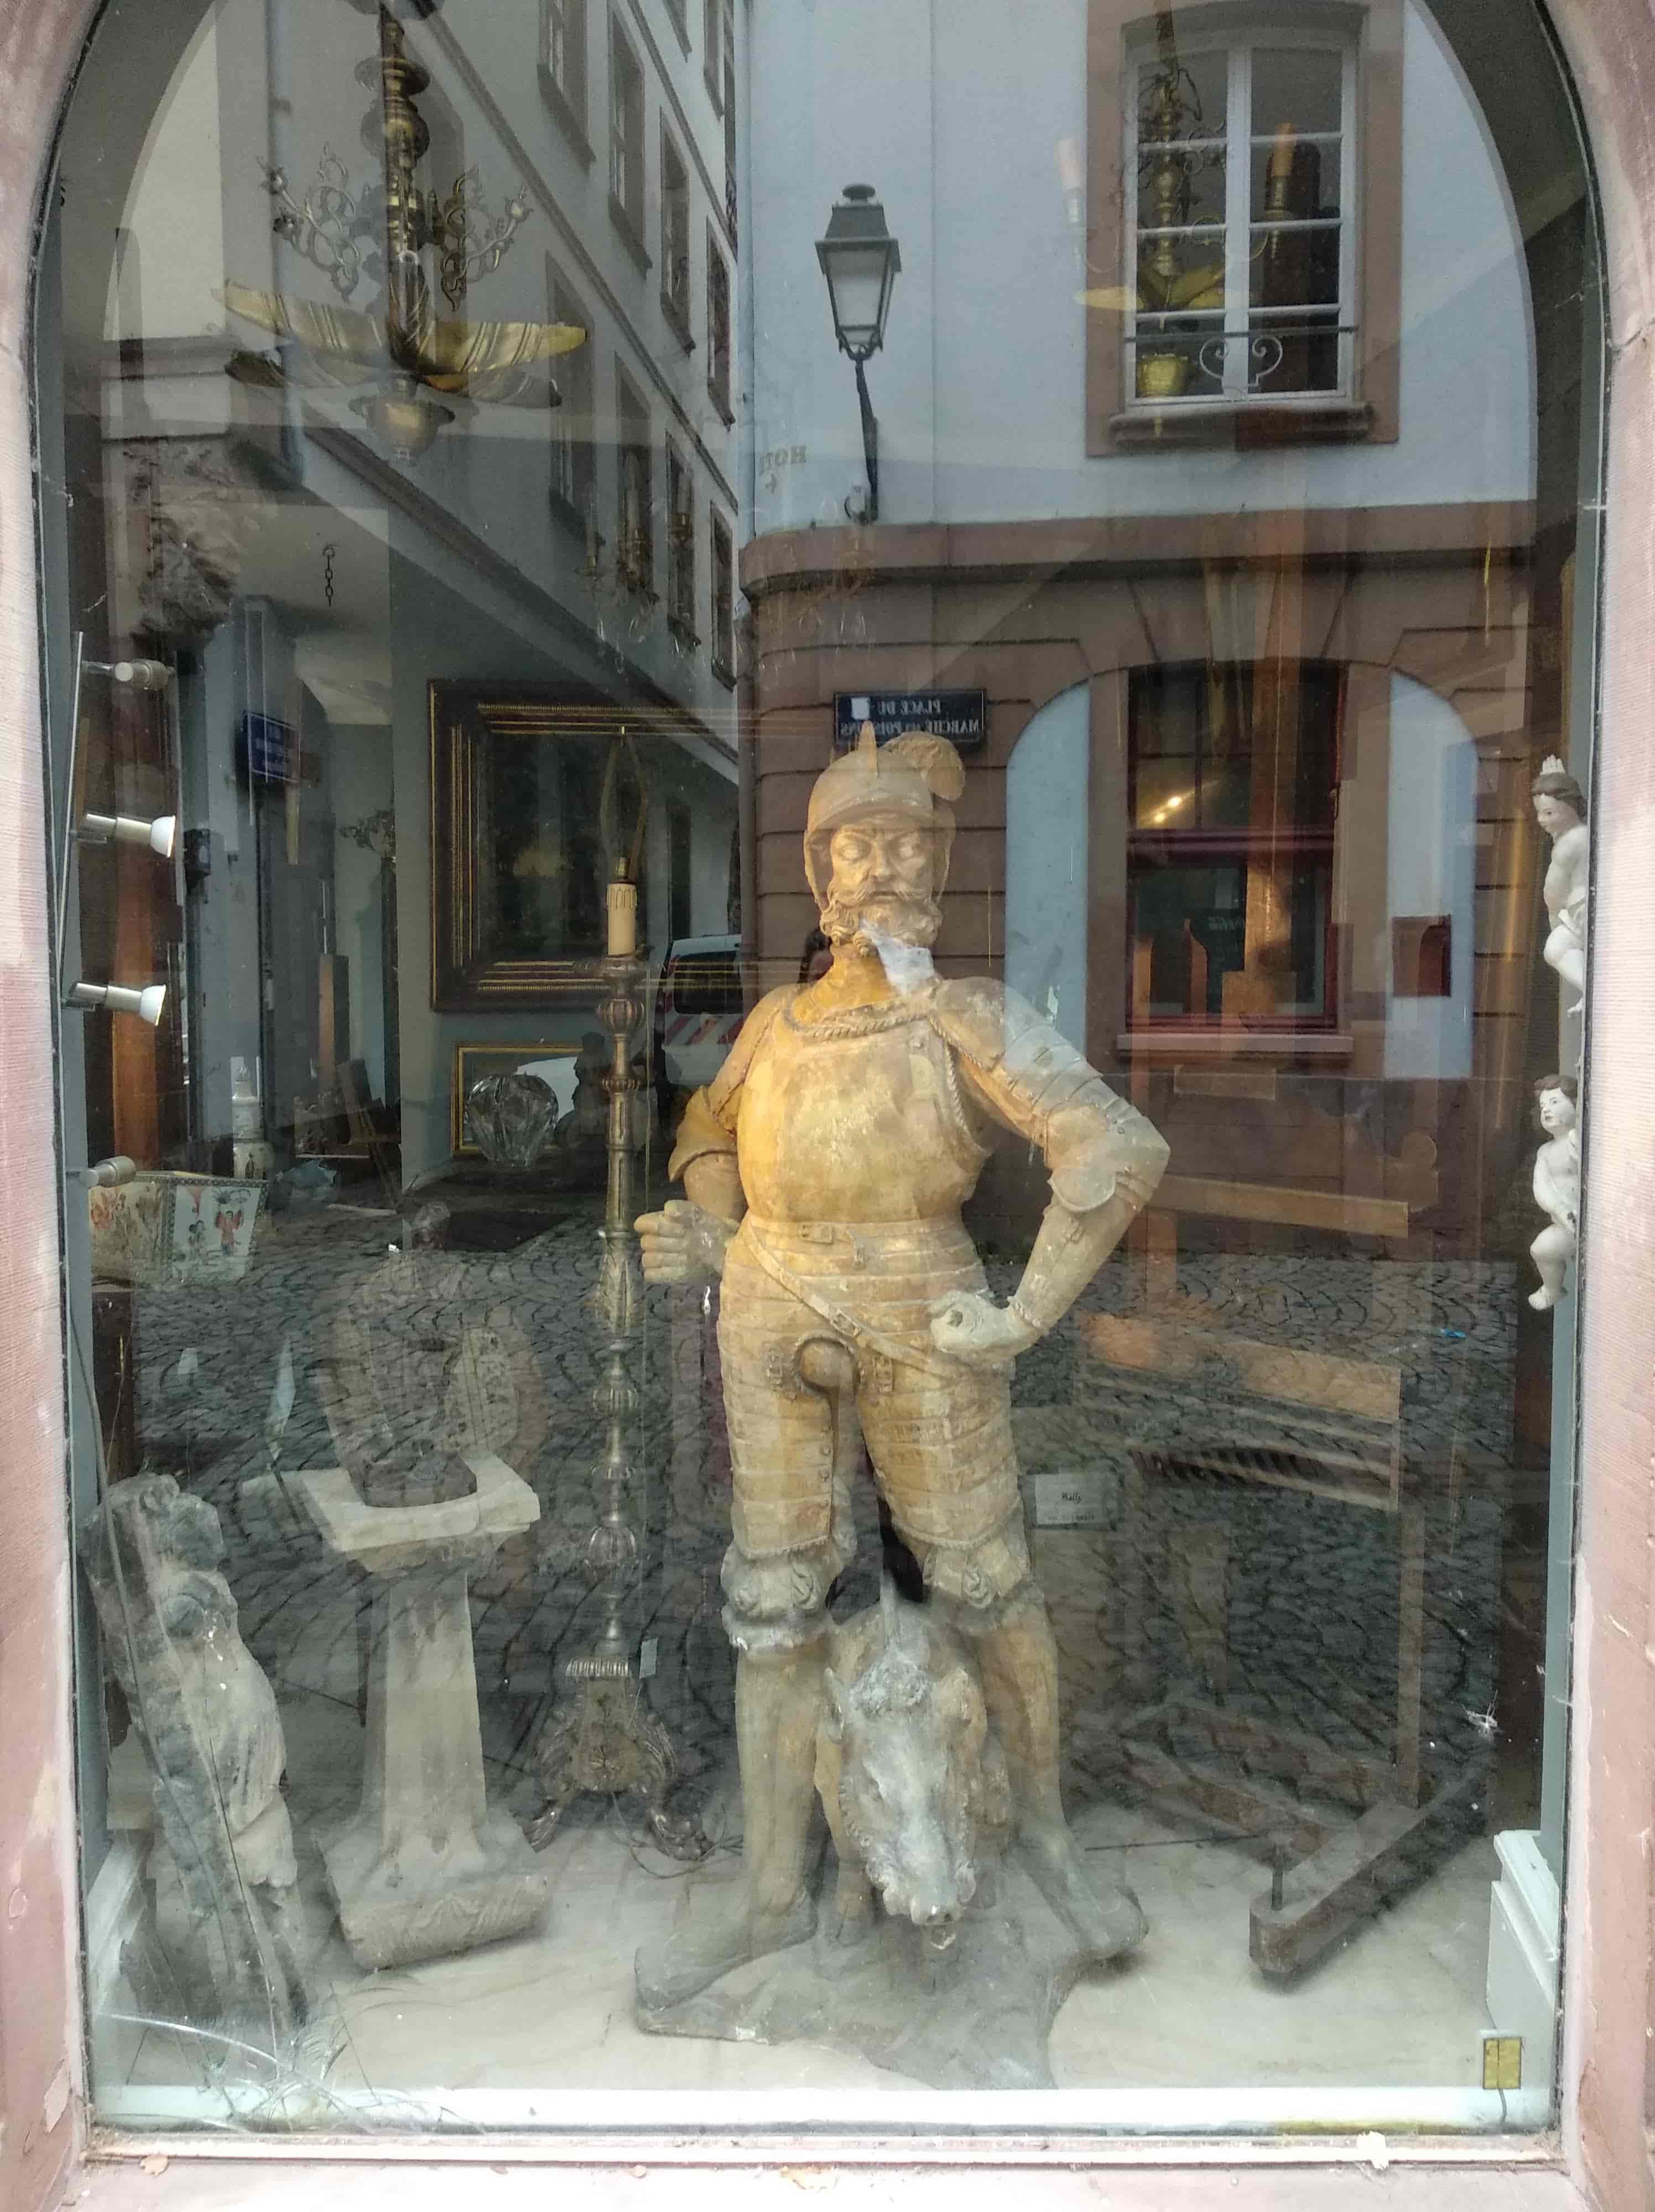 la vitrine d'un magasin d'antique où mon reflet est caché par une grande statue